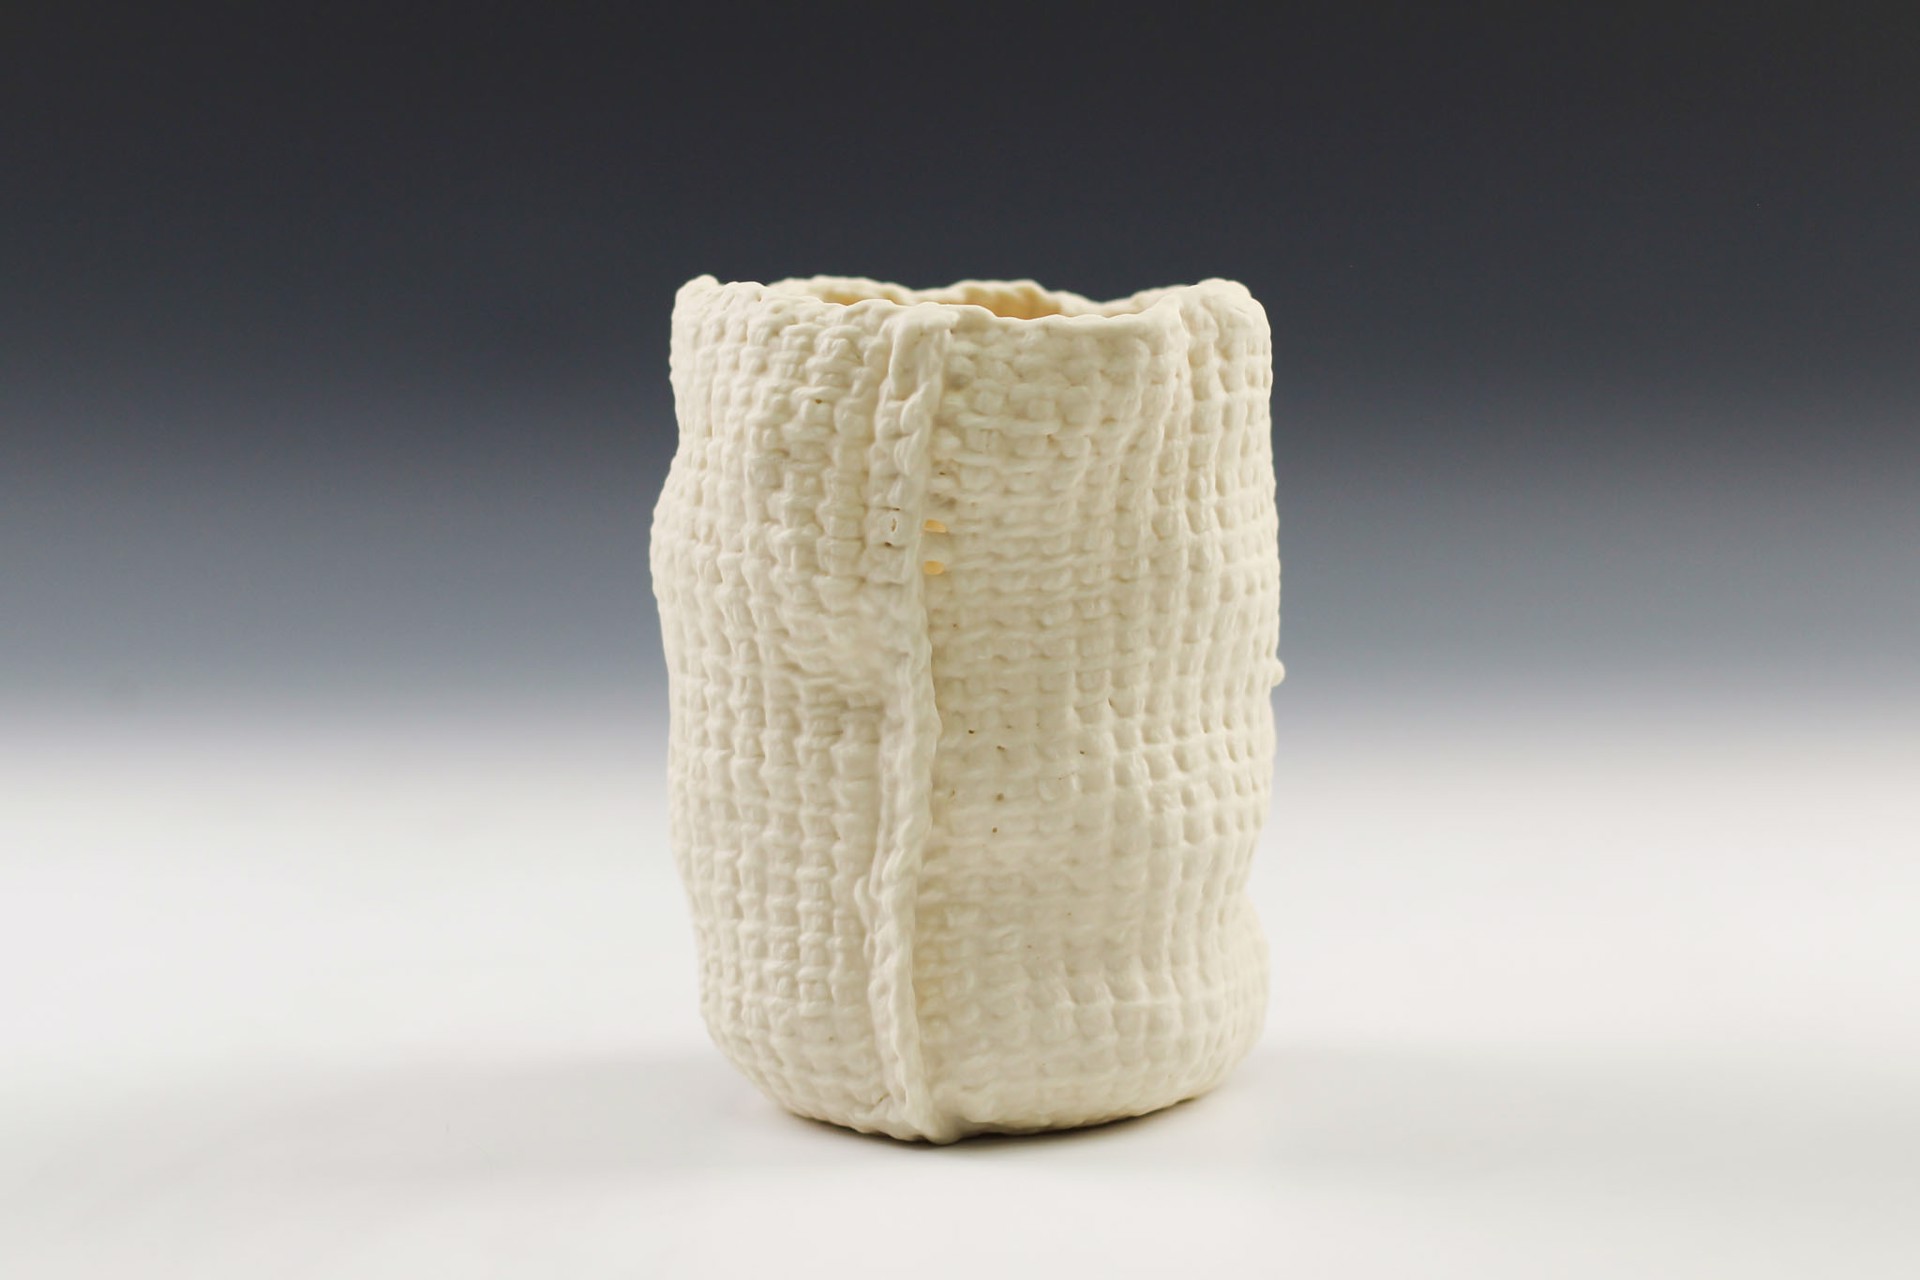 Tall Tunisian Crochet Vessel by Lisa Belsky